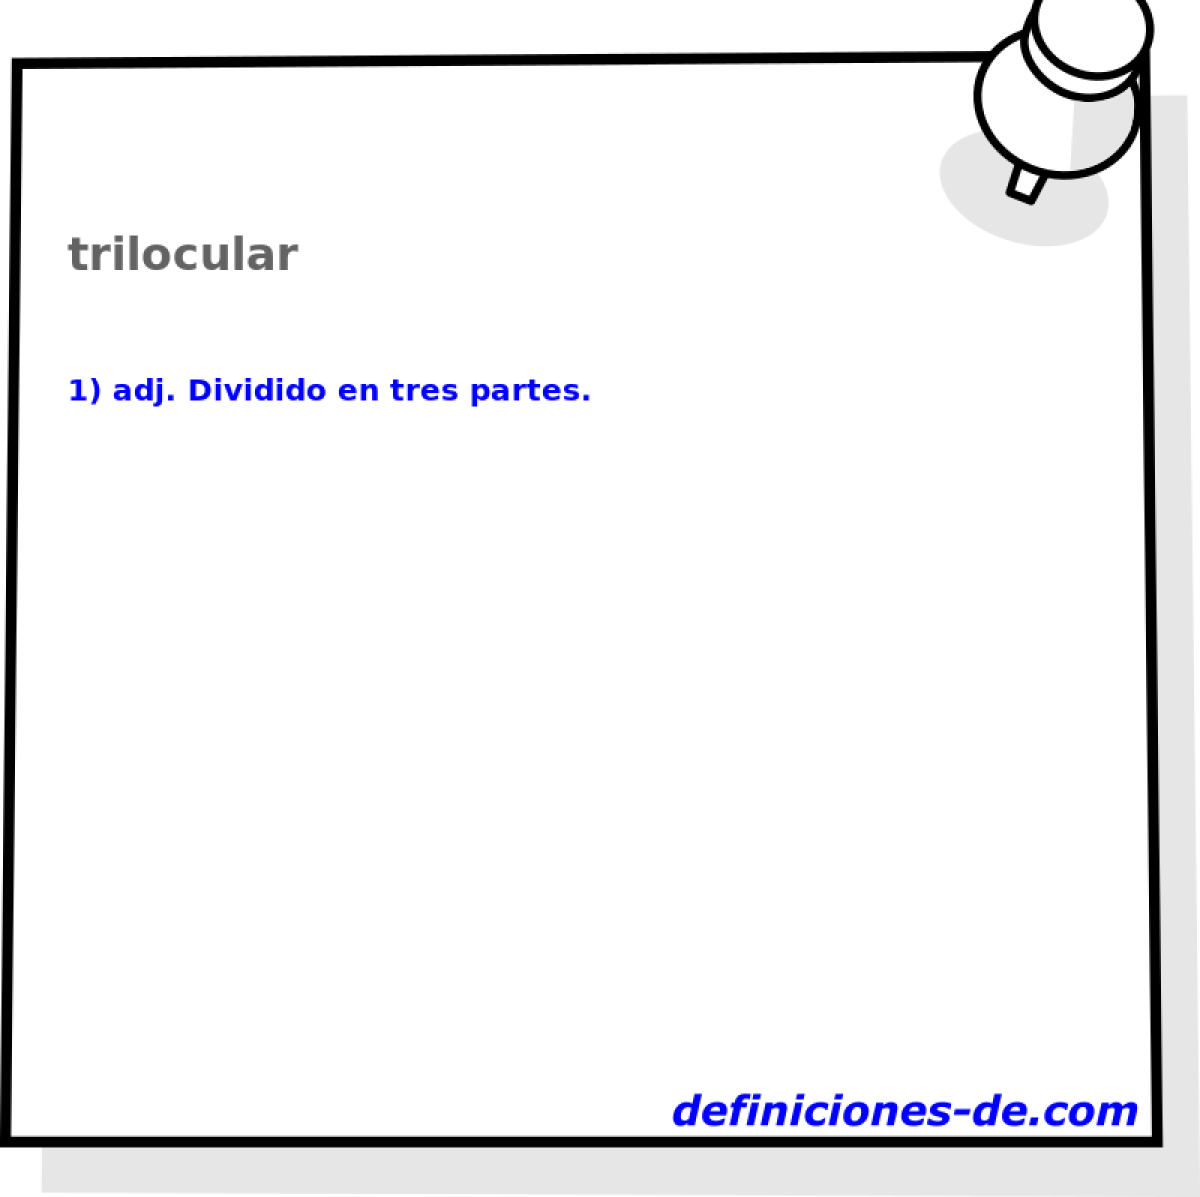 trilocular 